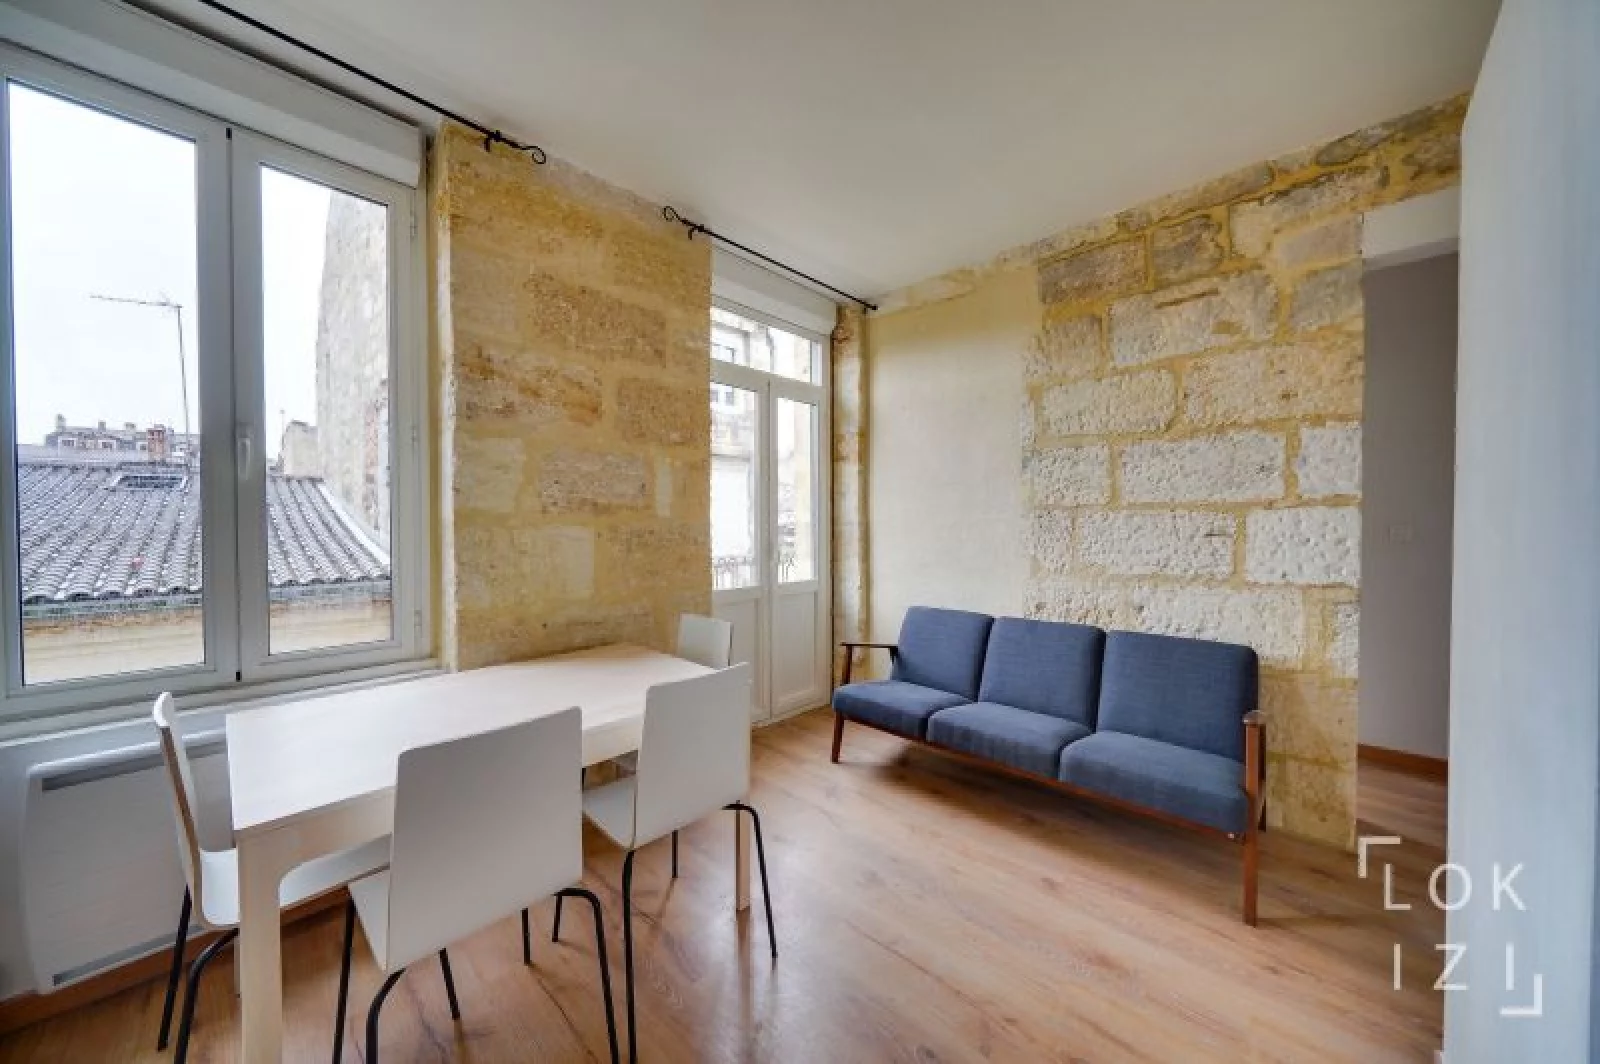 Location appartement meublé 3 pièces 42m² (Bordeaux - Chartrons)